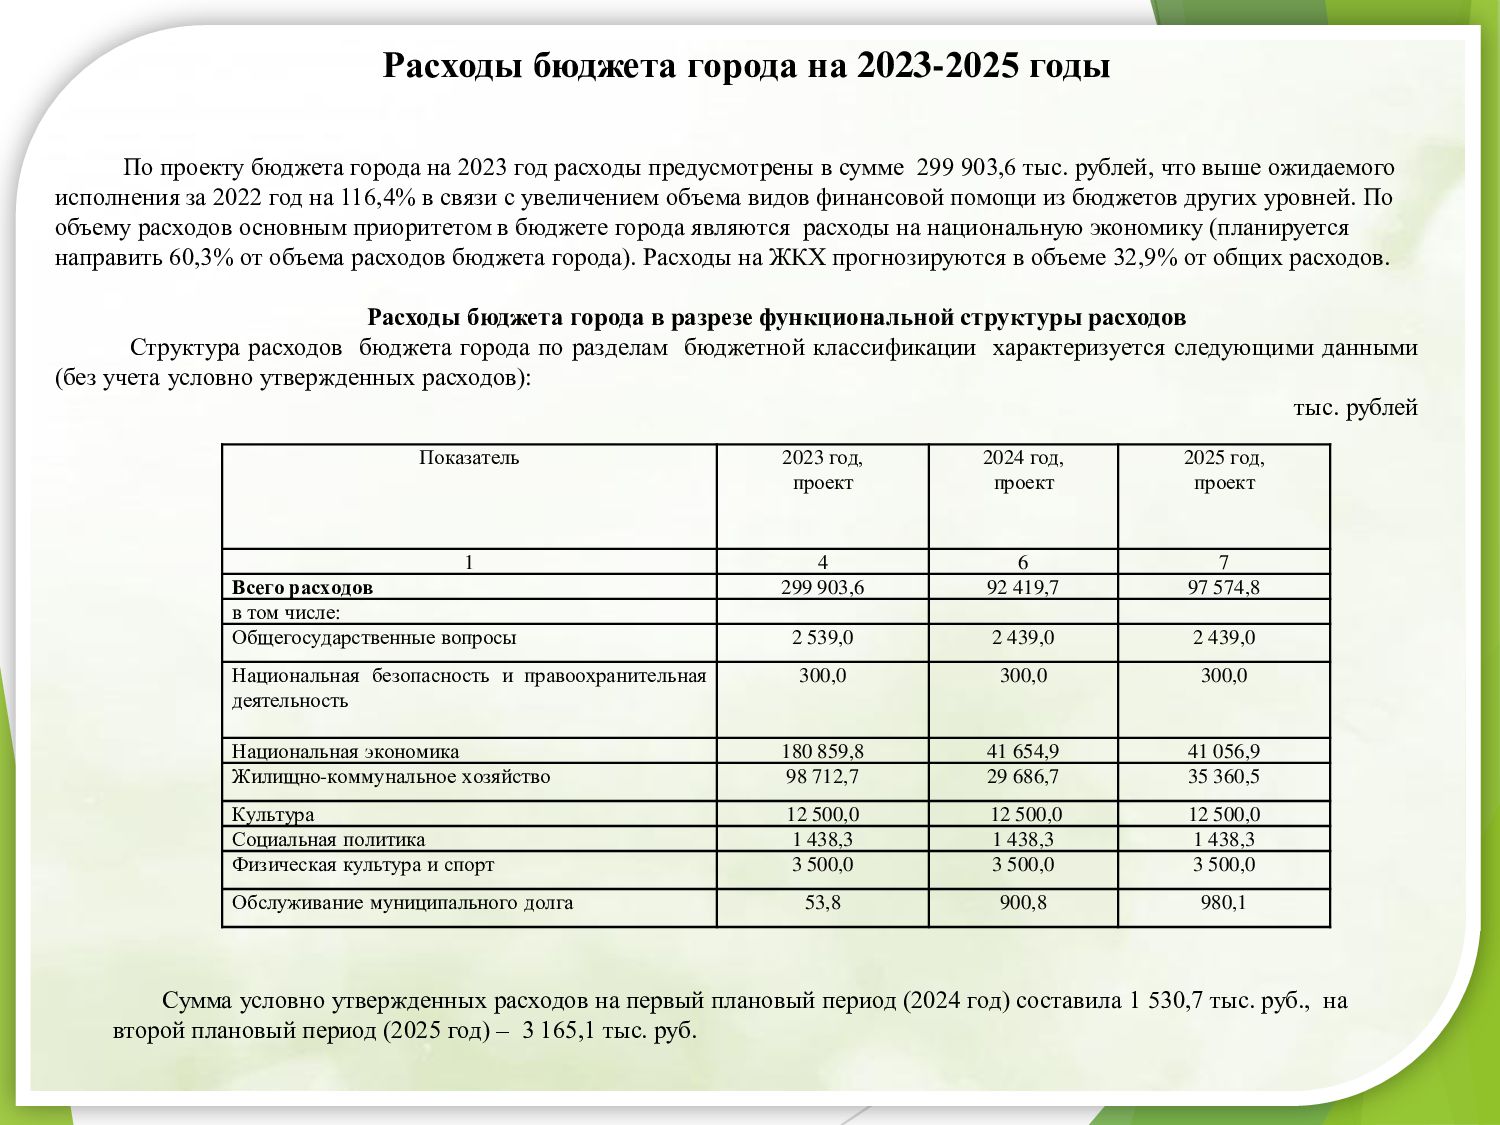 Закон о бюджете 2021. Расходы граждан за 2021 год.